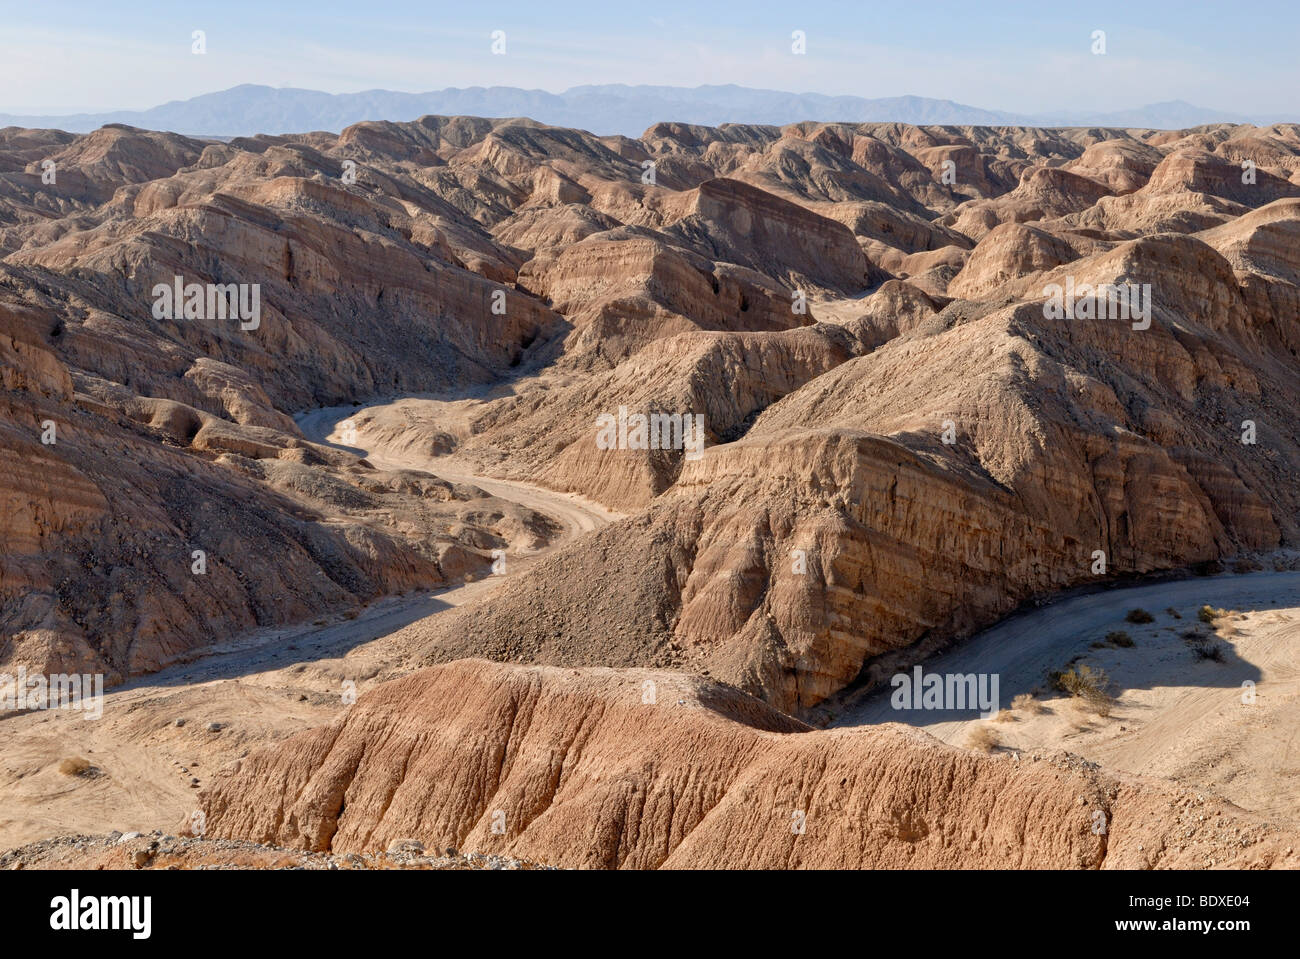 Paesaggio roccioso con canyon e il letto del fiume, Anza Borrego Desert a S 22, Borrego Springs, California del Sud, STATI UNITI D'AMERICA Foto Stock